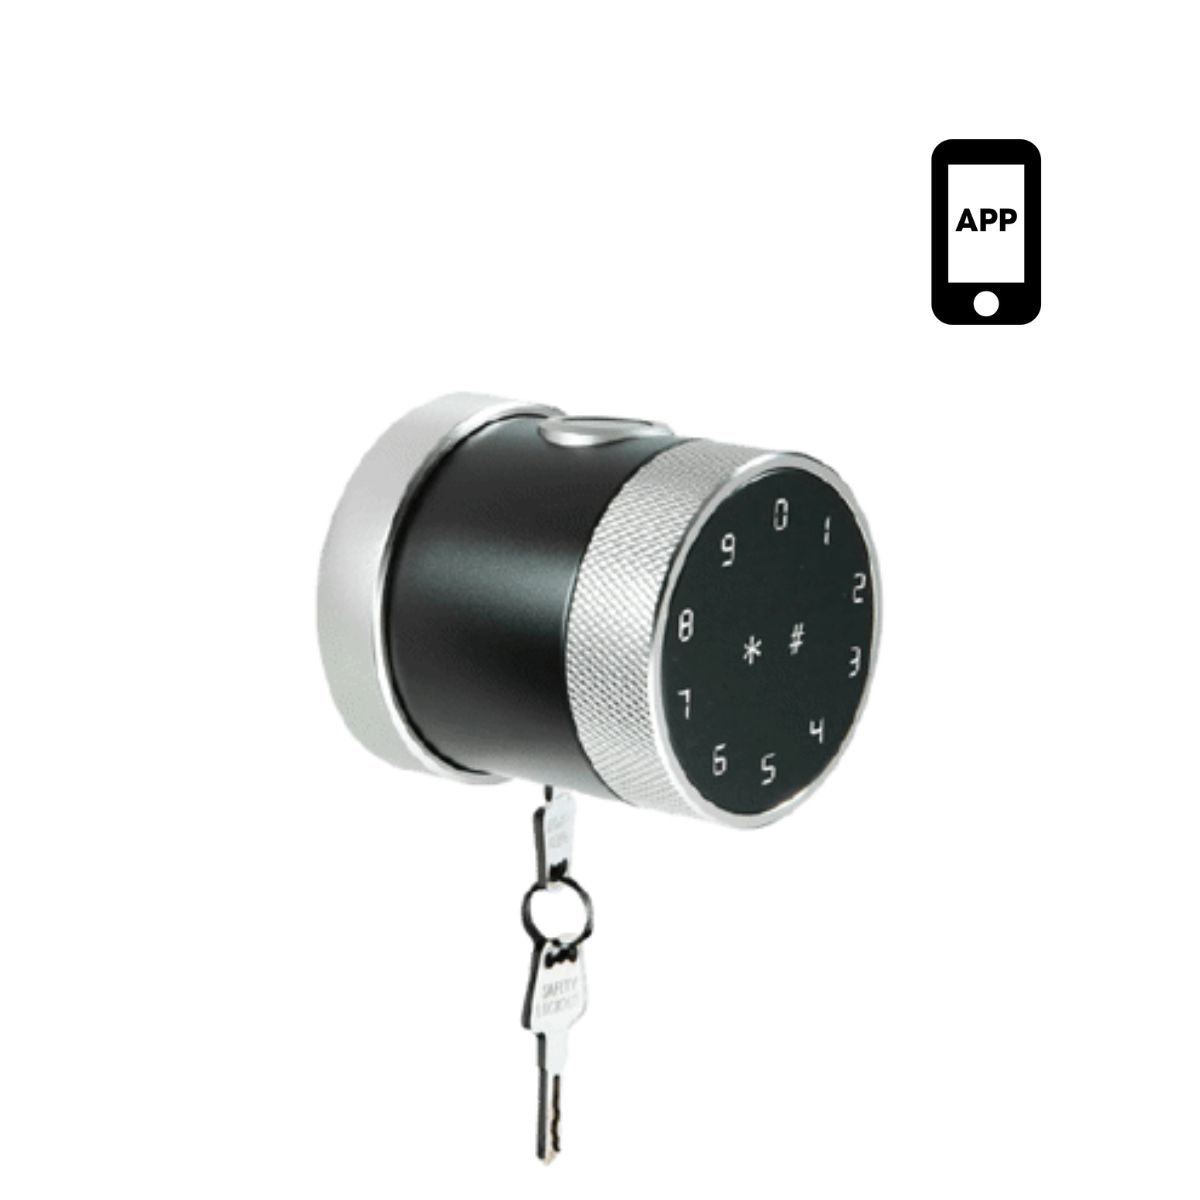 Khóa cửa tay nắm tròn Màu bạc PHGLock FP8193 mở khóa bằng APP, thẻ MI, mật mã, vân tay và chìa khóa cơ